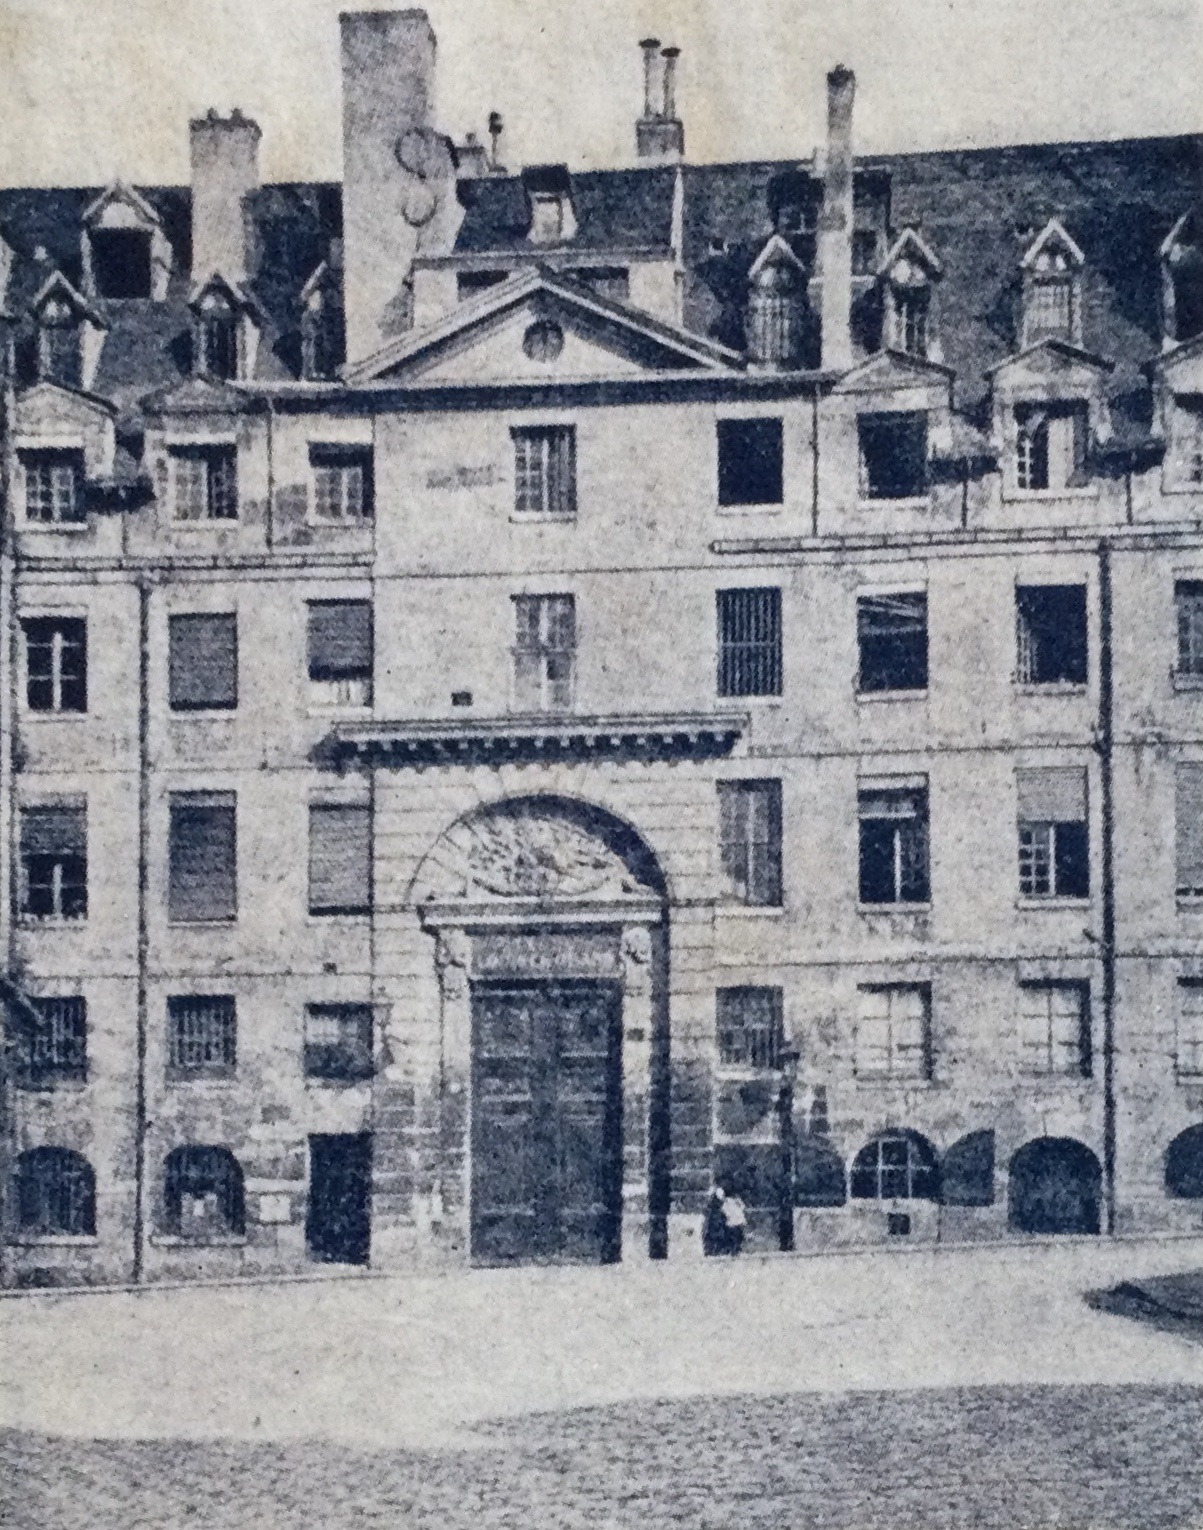 Frente del colegio Louis-le-Grand, donde Robespierre recitó de memoria frente a los reyes de Francia. El colegio había sido fundado por los jesuitas en 1562. Publicado en A Travers Paris, de G. Cain.